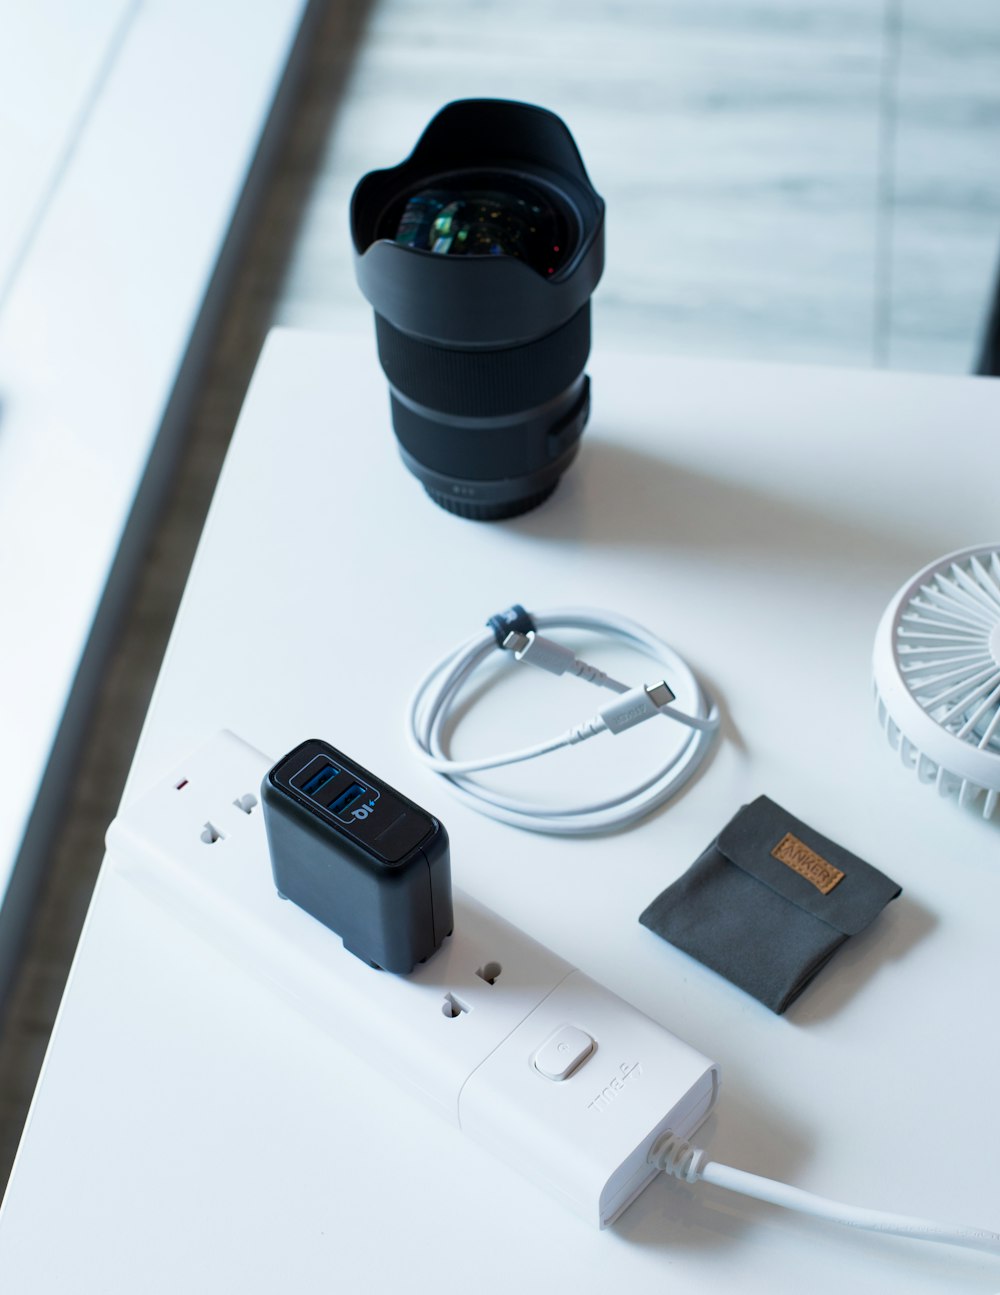 white travel adapter beside camera lens on white surface